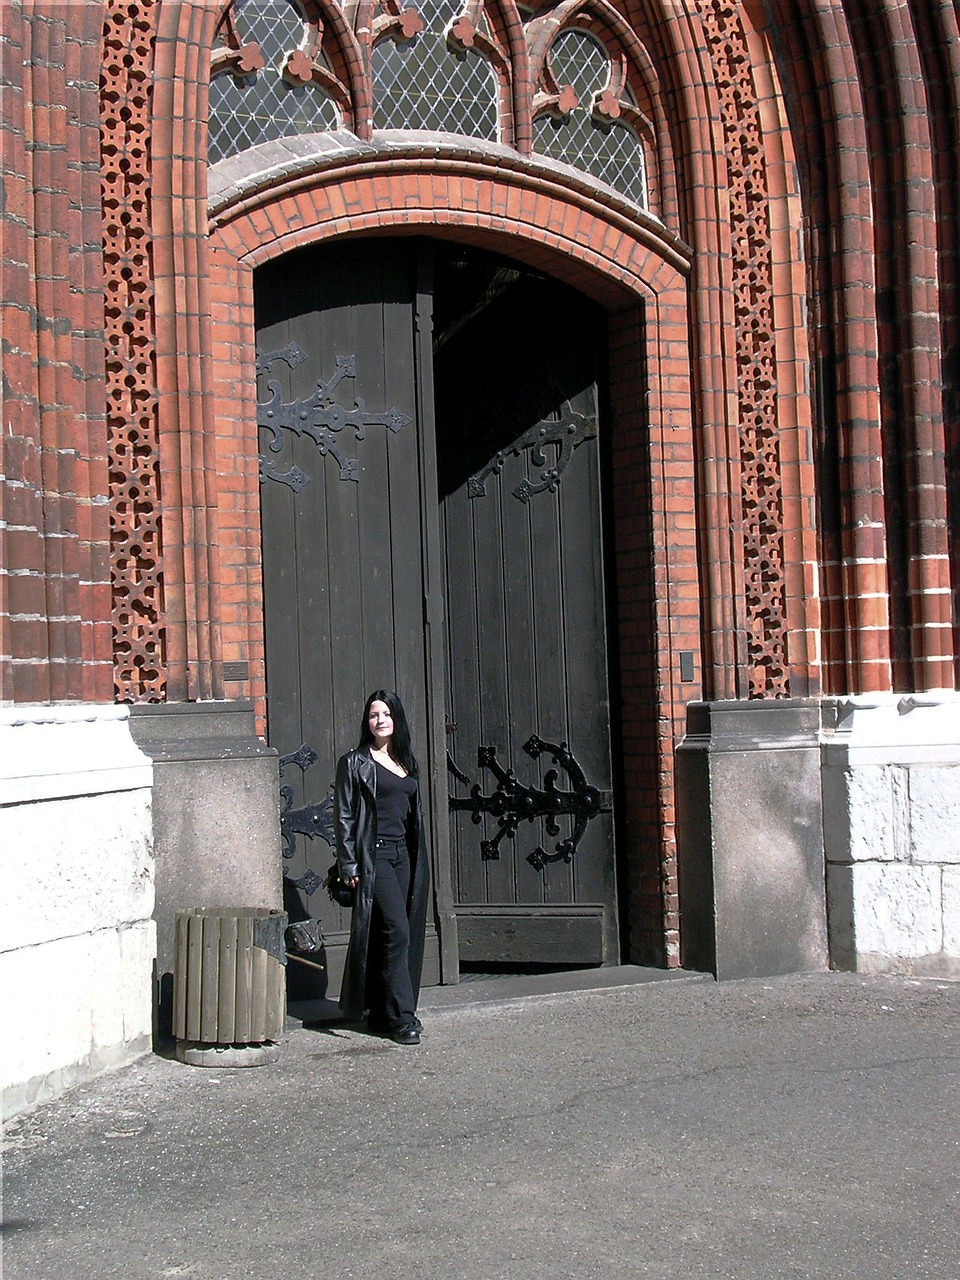 stralsund church portal free photo